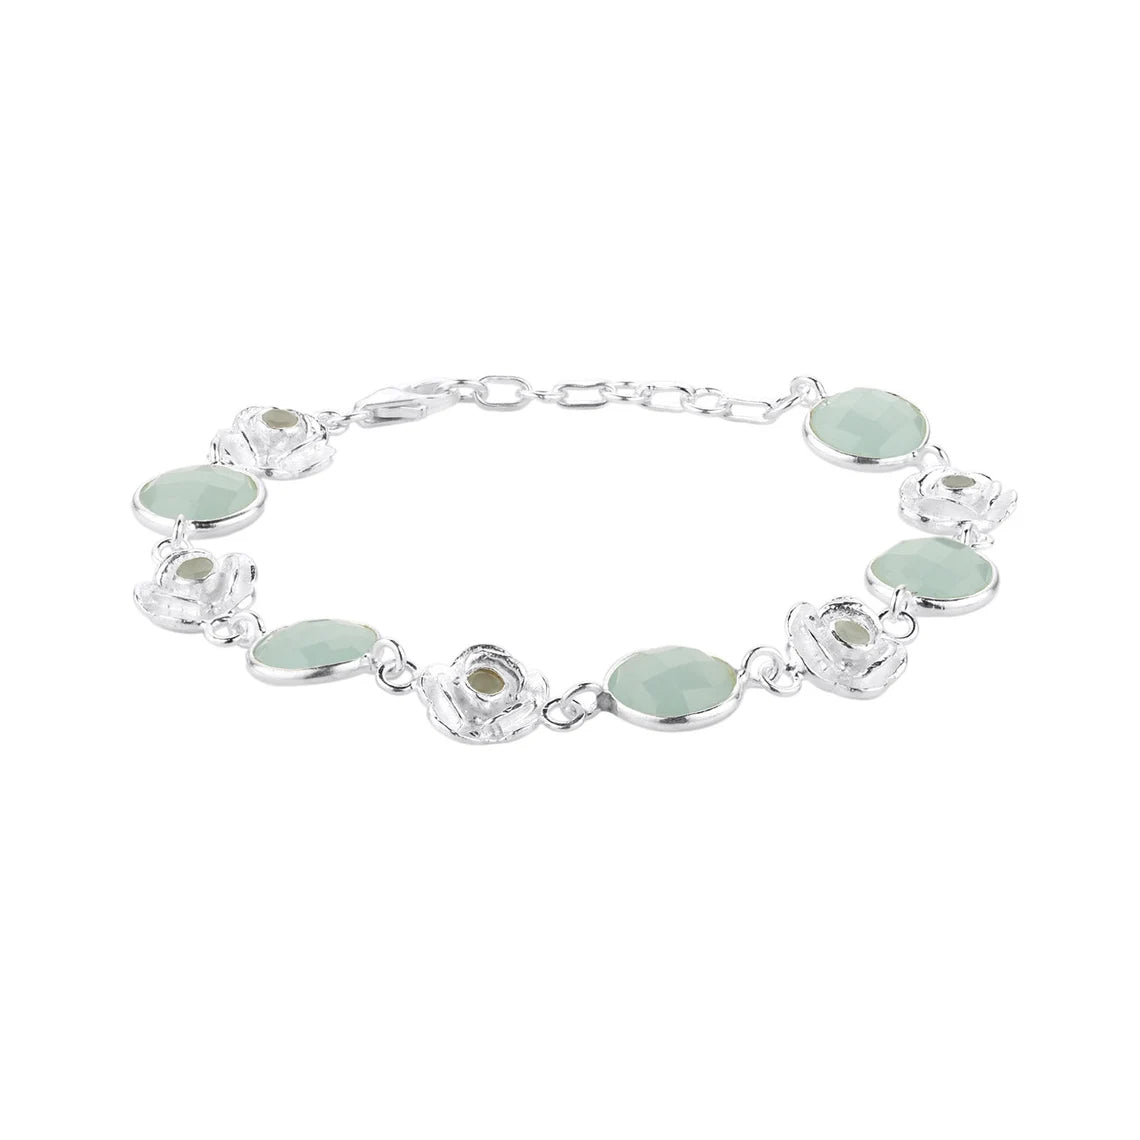 Aqua Chalcedony Bracelet, 925 Sterling Silver Bracelet, Handmade Bracelet, Gift for her, Boho Jewelry